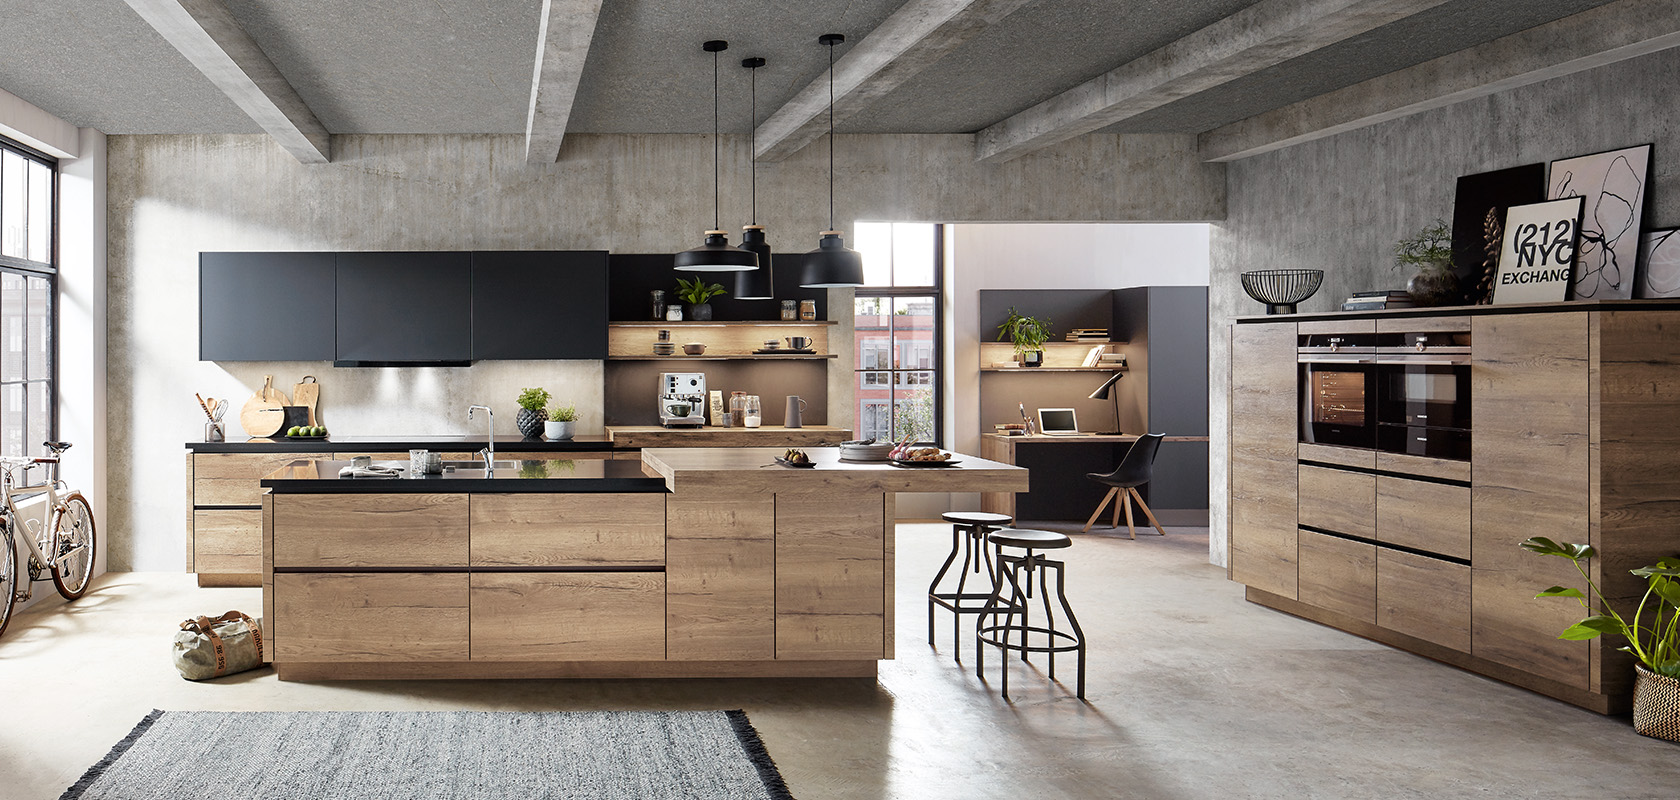 Moderní kuchyňský interiér s kombinací průmyslového a rustikálního stylu s dřevěnými prvky, nerezovými spotřebiči a elegantním zařízením snídaně u baru.